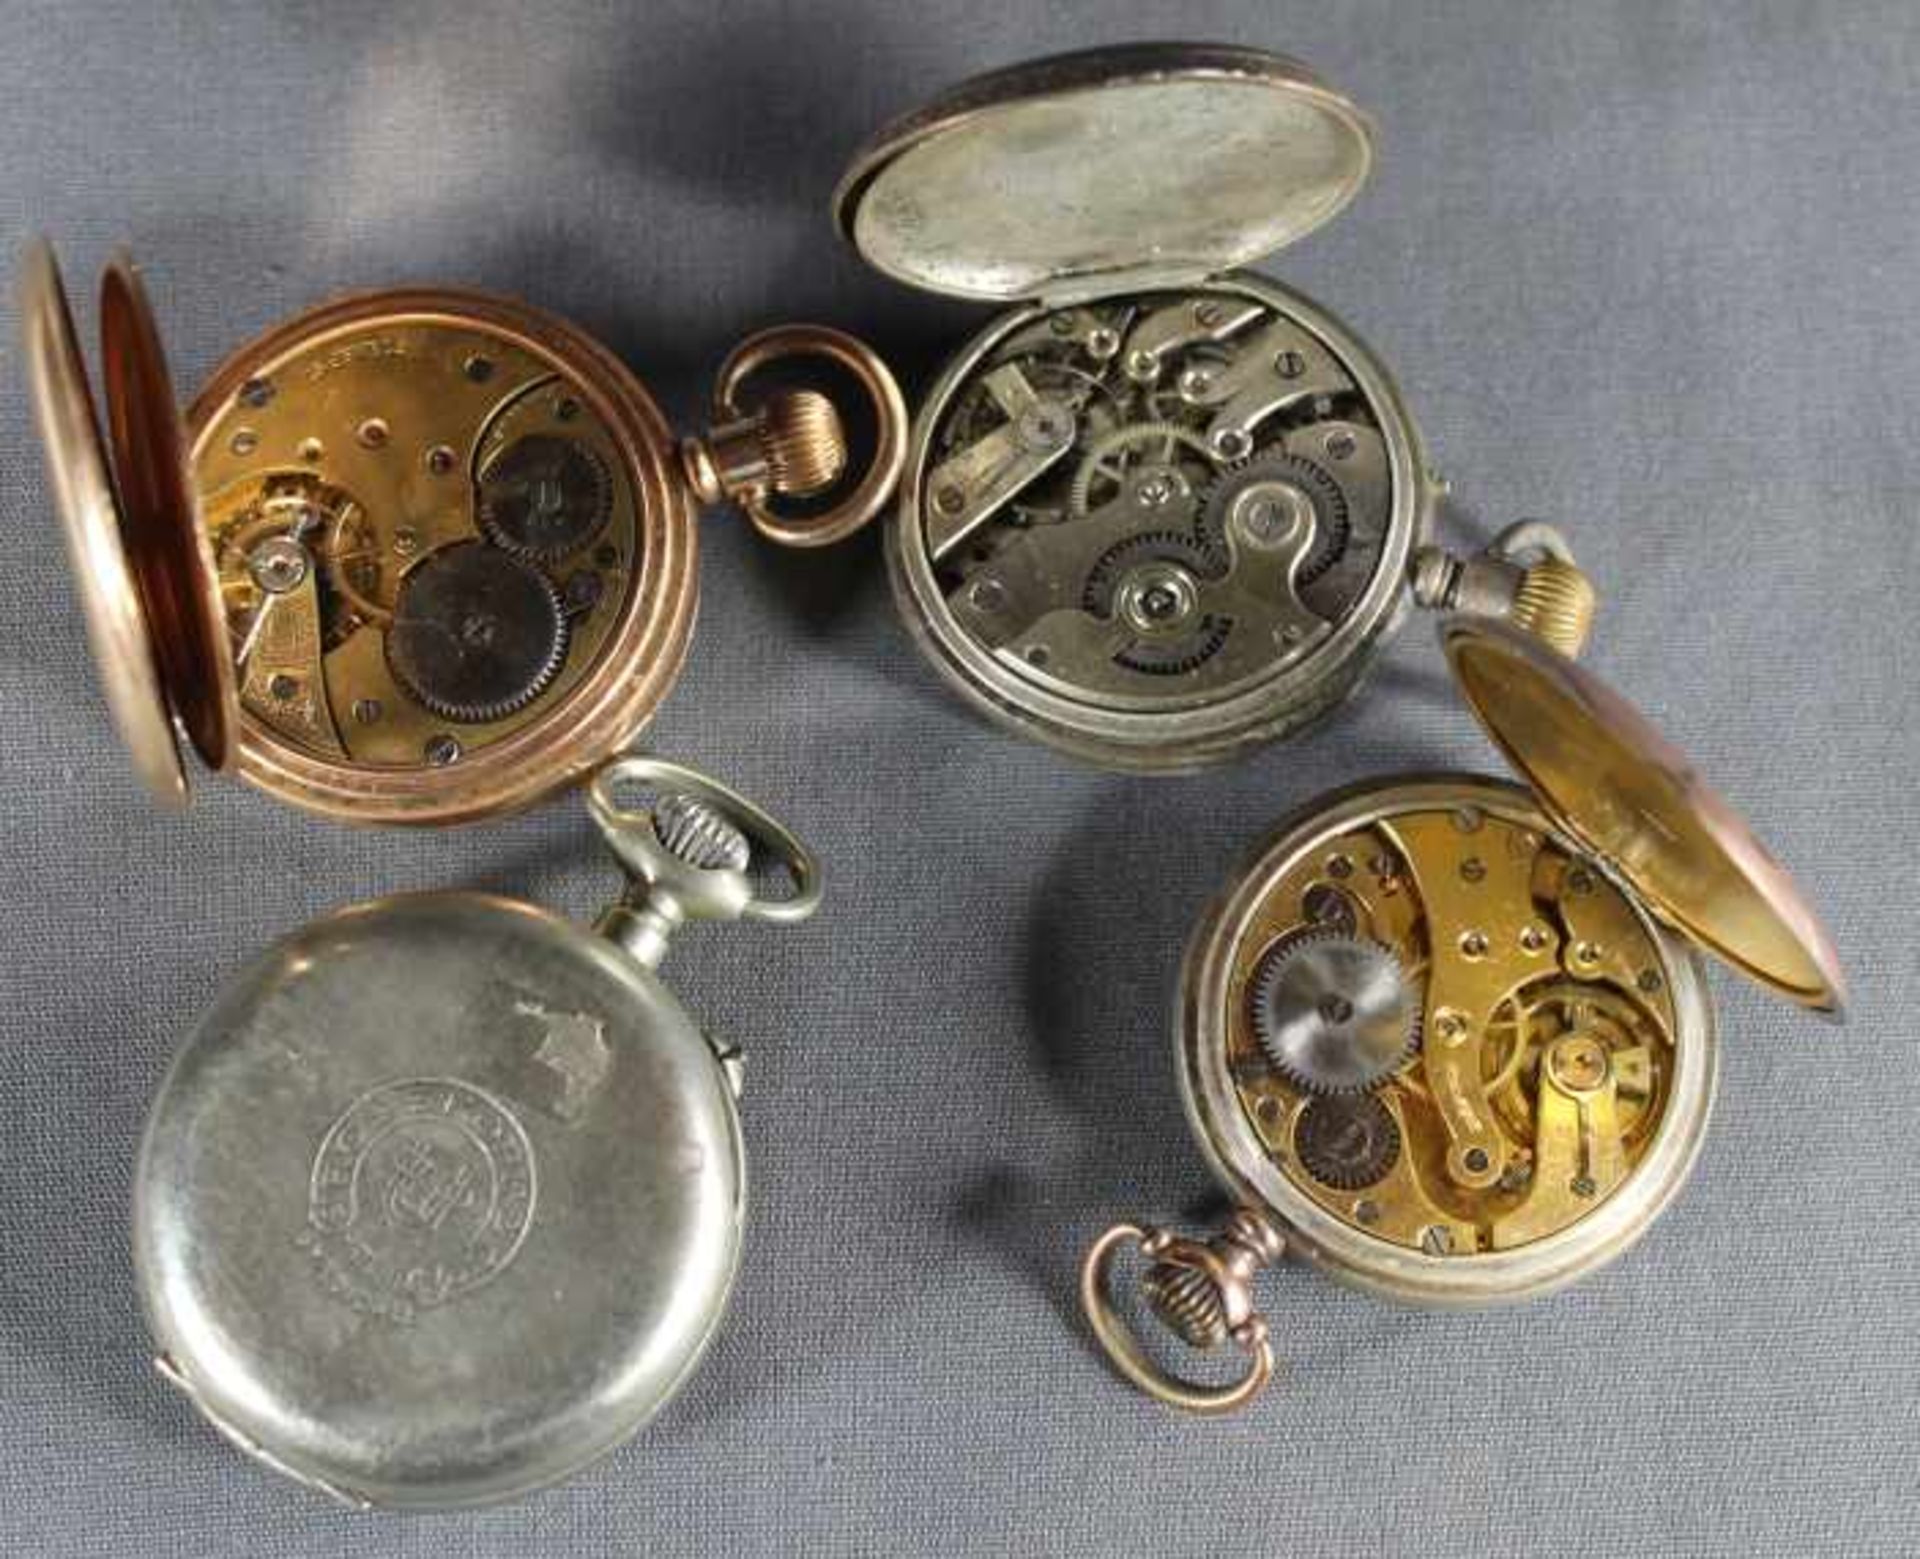 4 Taschenuhren Silber/10ct. vergoldet, unterschiedliche Marken u.a. Alpina, Rosskopf, und - Image 3 of 3